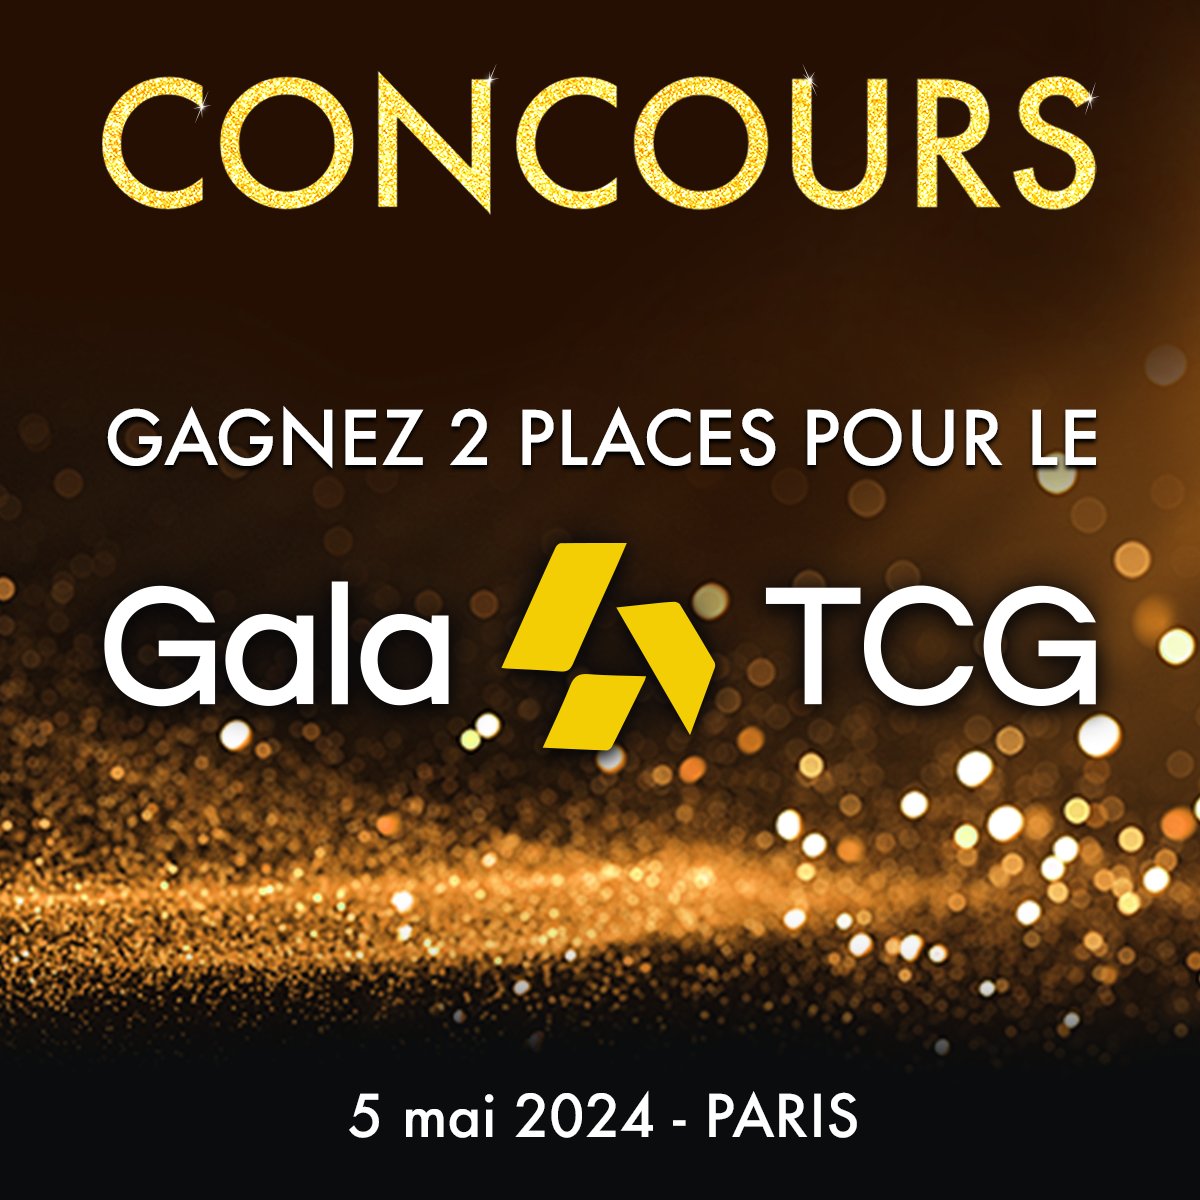 🎁 CONCOURS 🎁 Gagnez 2 places pour le Gala TCG à Paris le dimanche 5 mai 2024 !

🃏 Pour participer : RT + Follow
🍀 Tirage au sort vendredi 19 avril

Détails et règlement 👉 asmodee.fr/concoursgalatc…

#asmodee #jeuconcours #concours #jeuxdesociete #j2s #galatcg #tcg